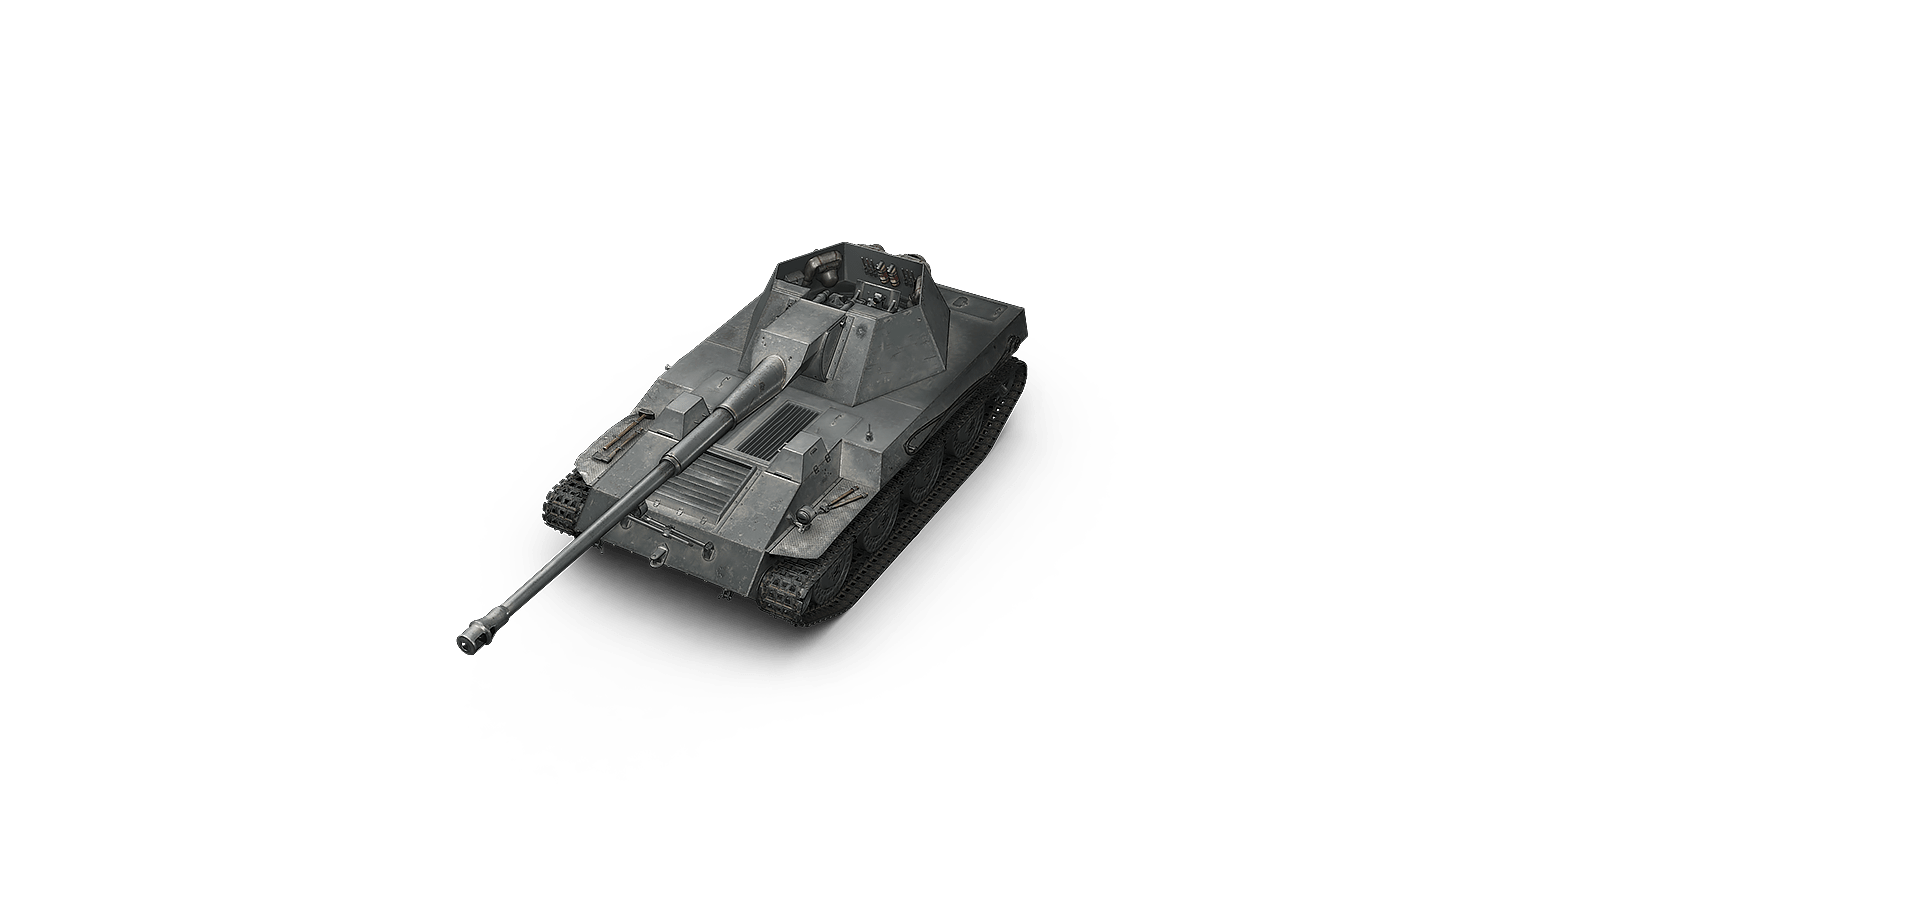 Купить премиум танк Krupp-Steyr Waffenträger для World of Tanks